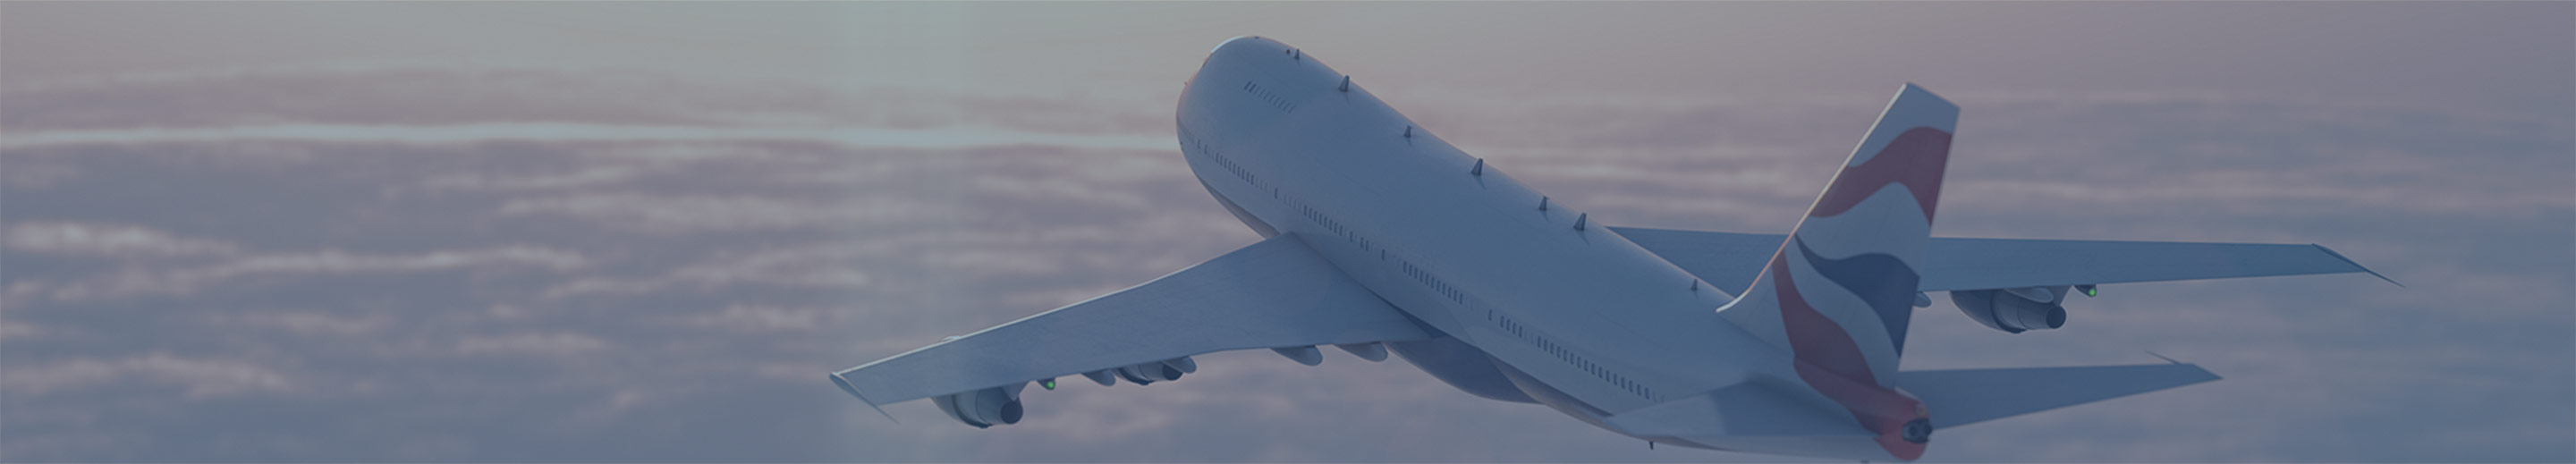 Podróże - samolot nad chmurami